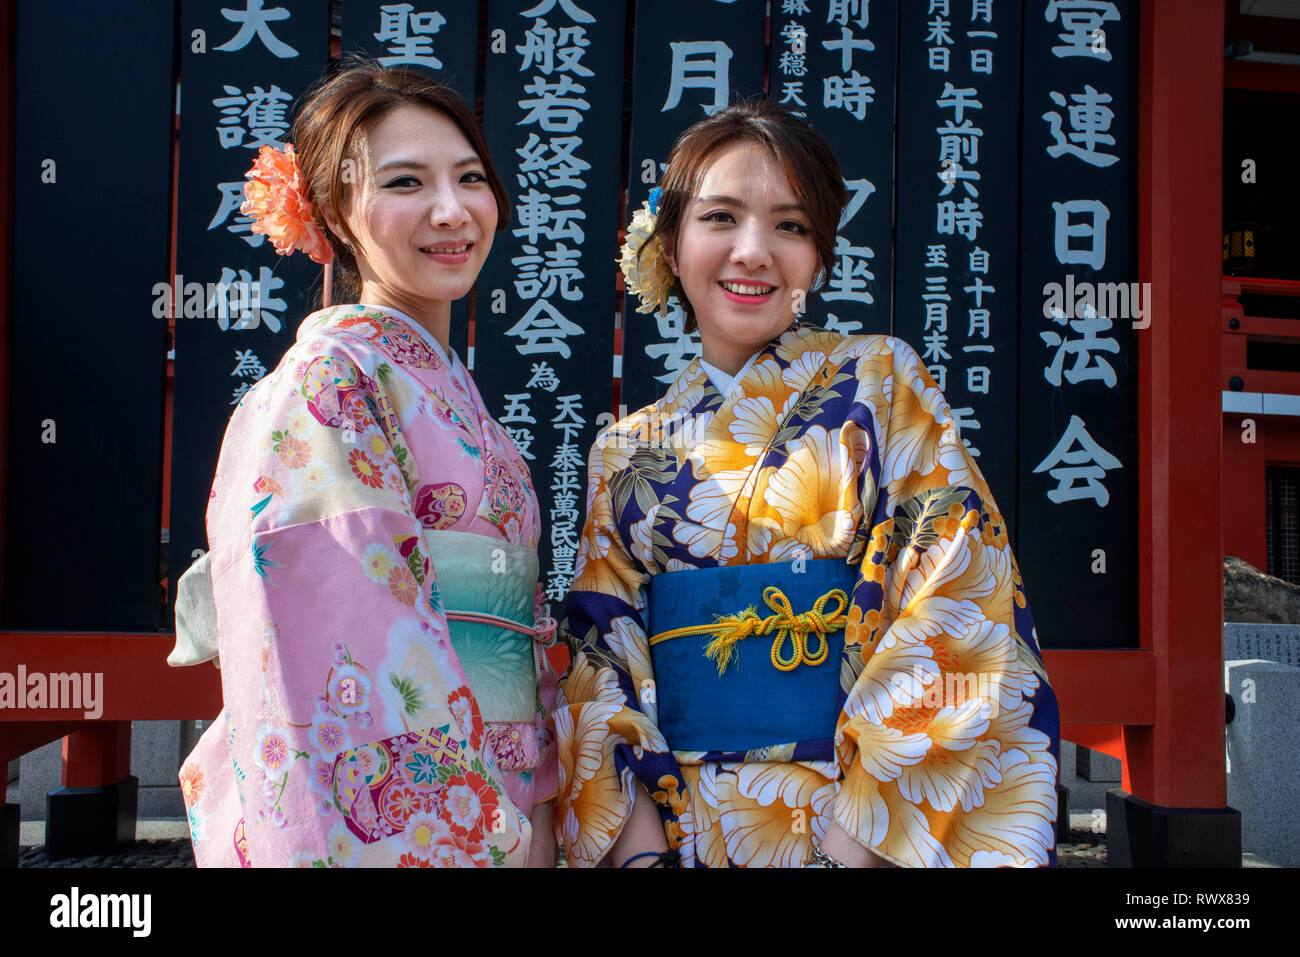 Le donne di indossare il kimono, la tradizione nazionale costume del Giappone, camminando sulla Nakamise dori, una strada con il cibo e i negozi di souvenir. Di Senso-ji Tem buddista Foto Stock